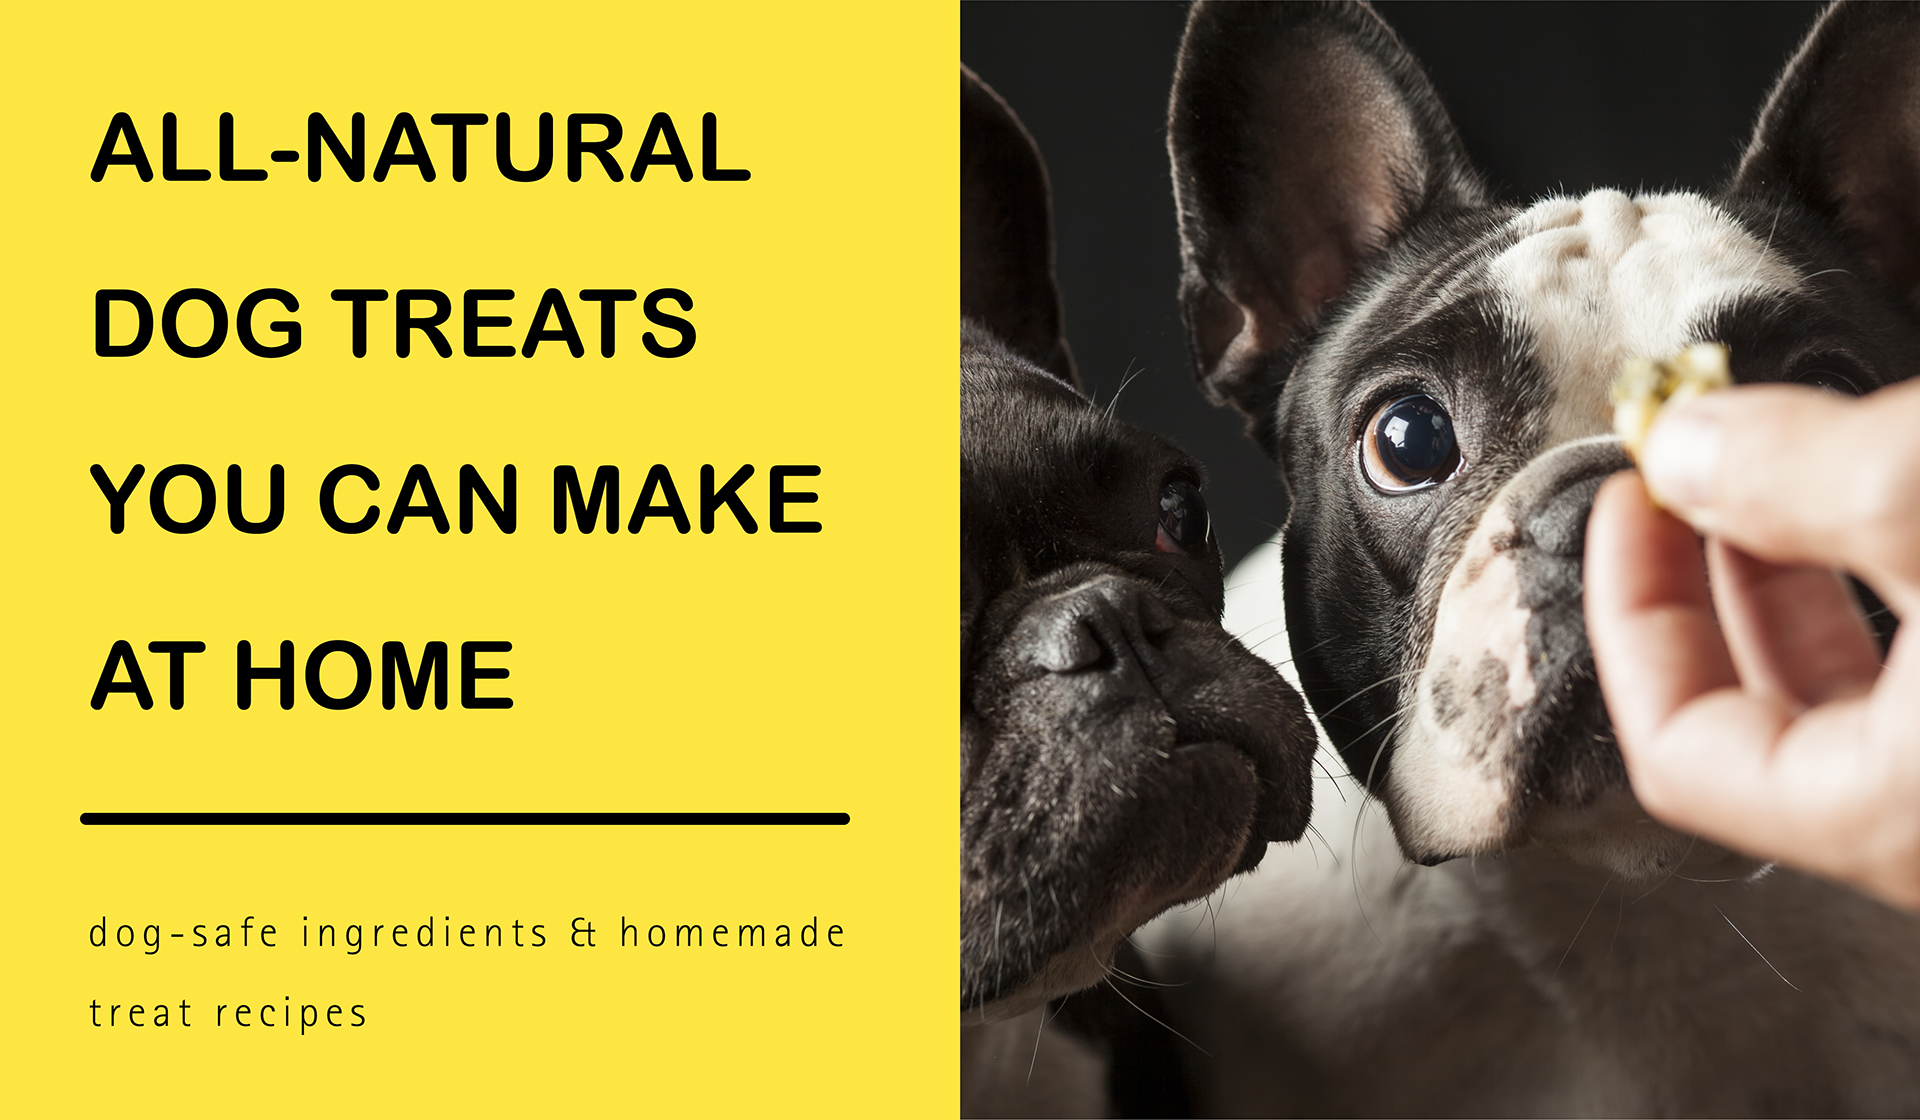 All-Natural Dog Treats You Can Make at Home